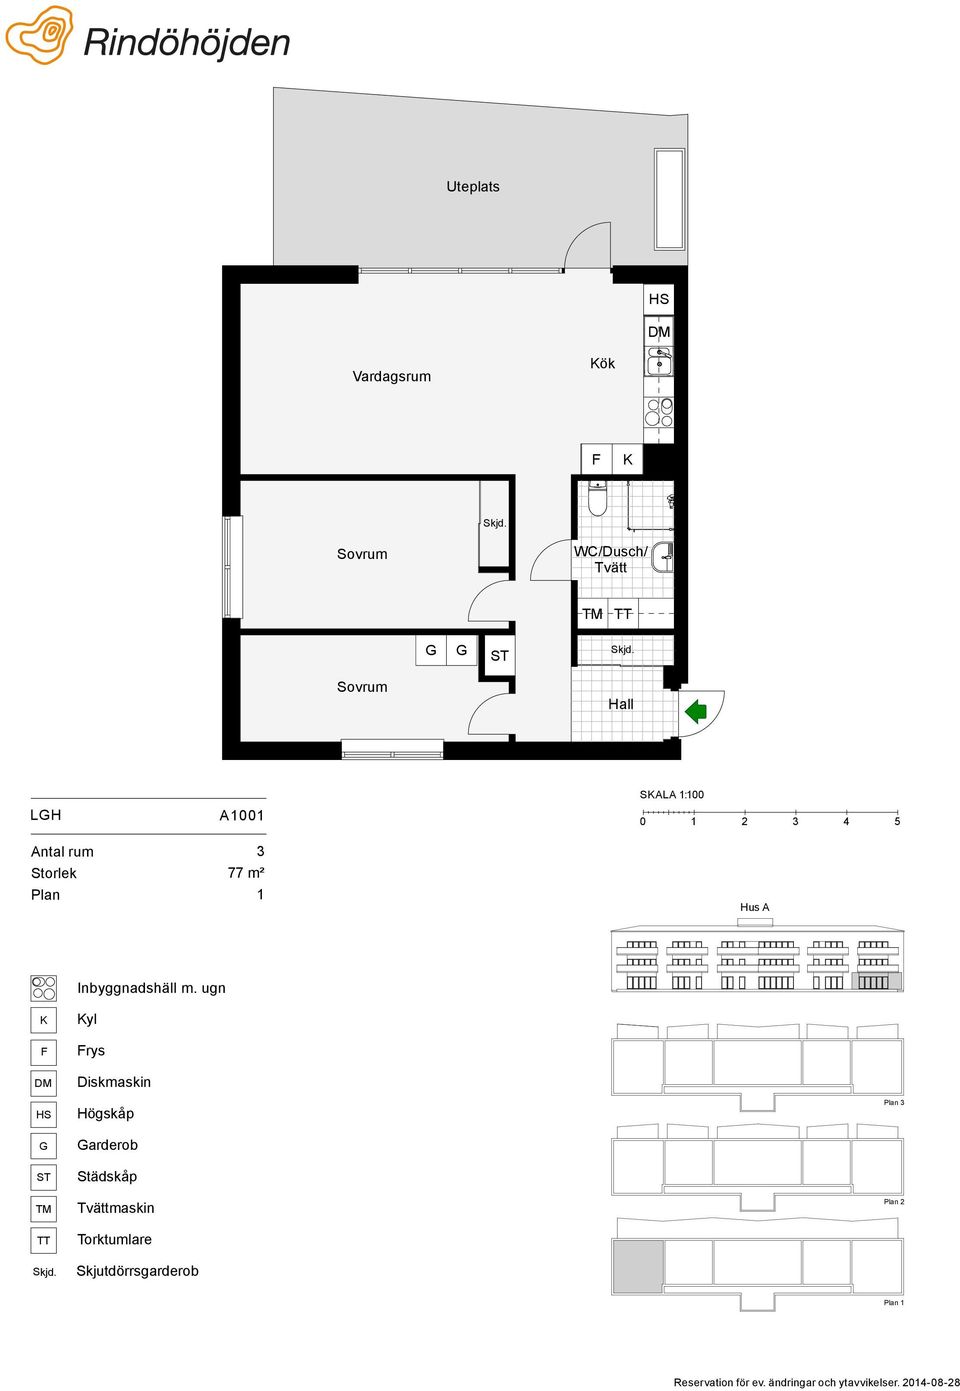 1:100 77 m² 1